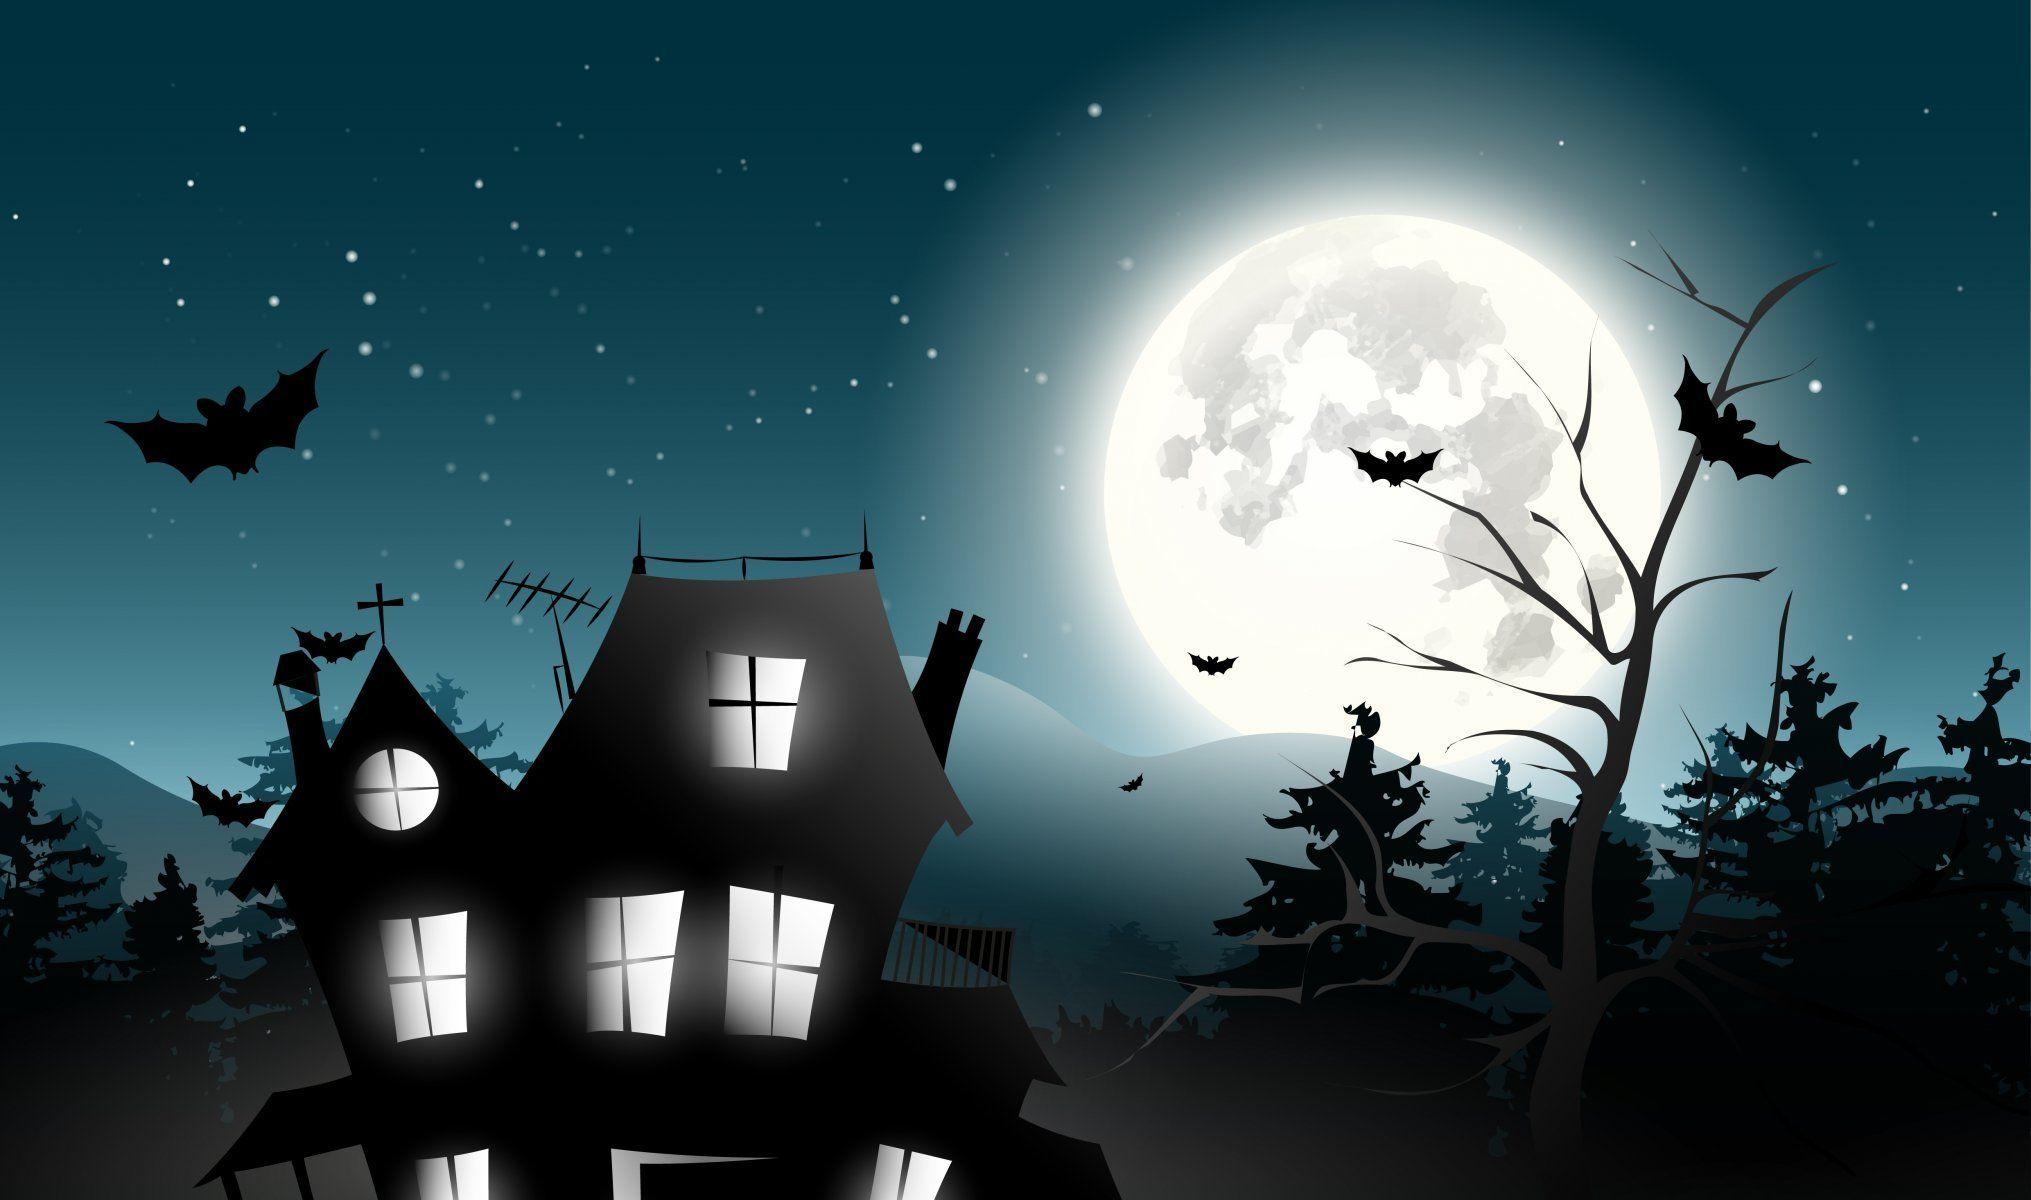 holiday halloween scary house horror creepy full moon castle trees